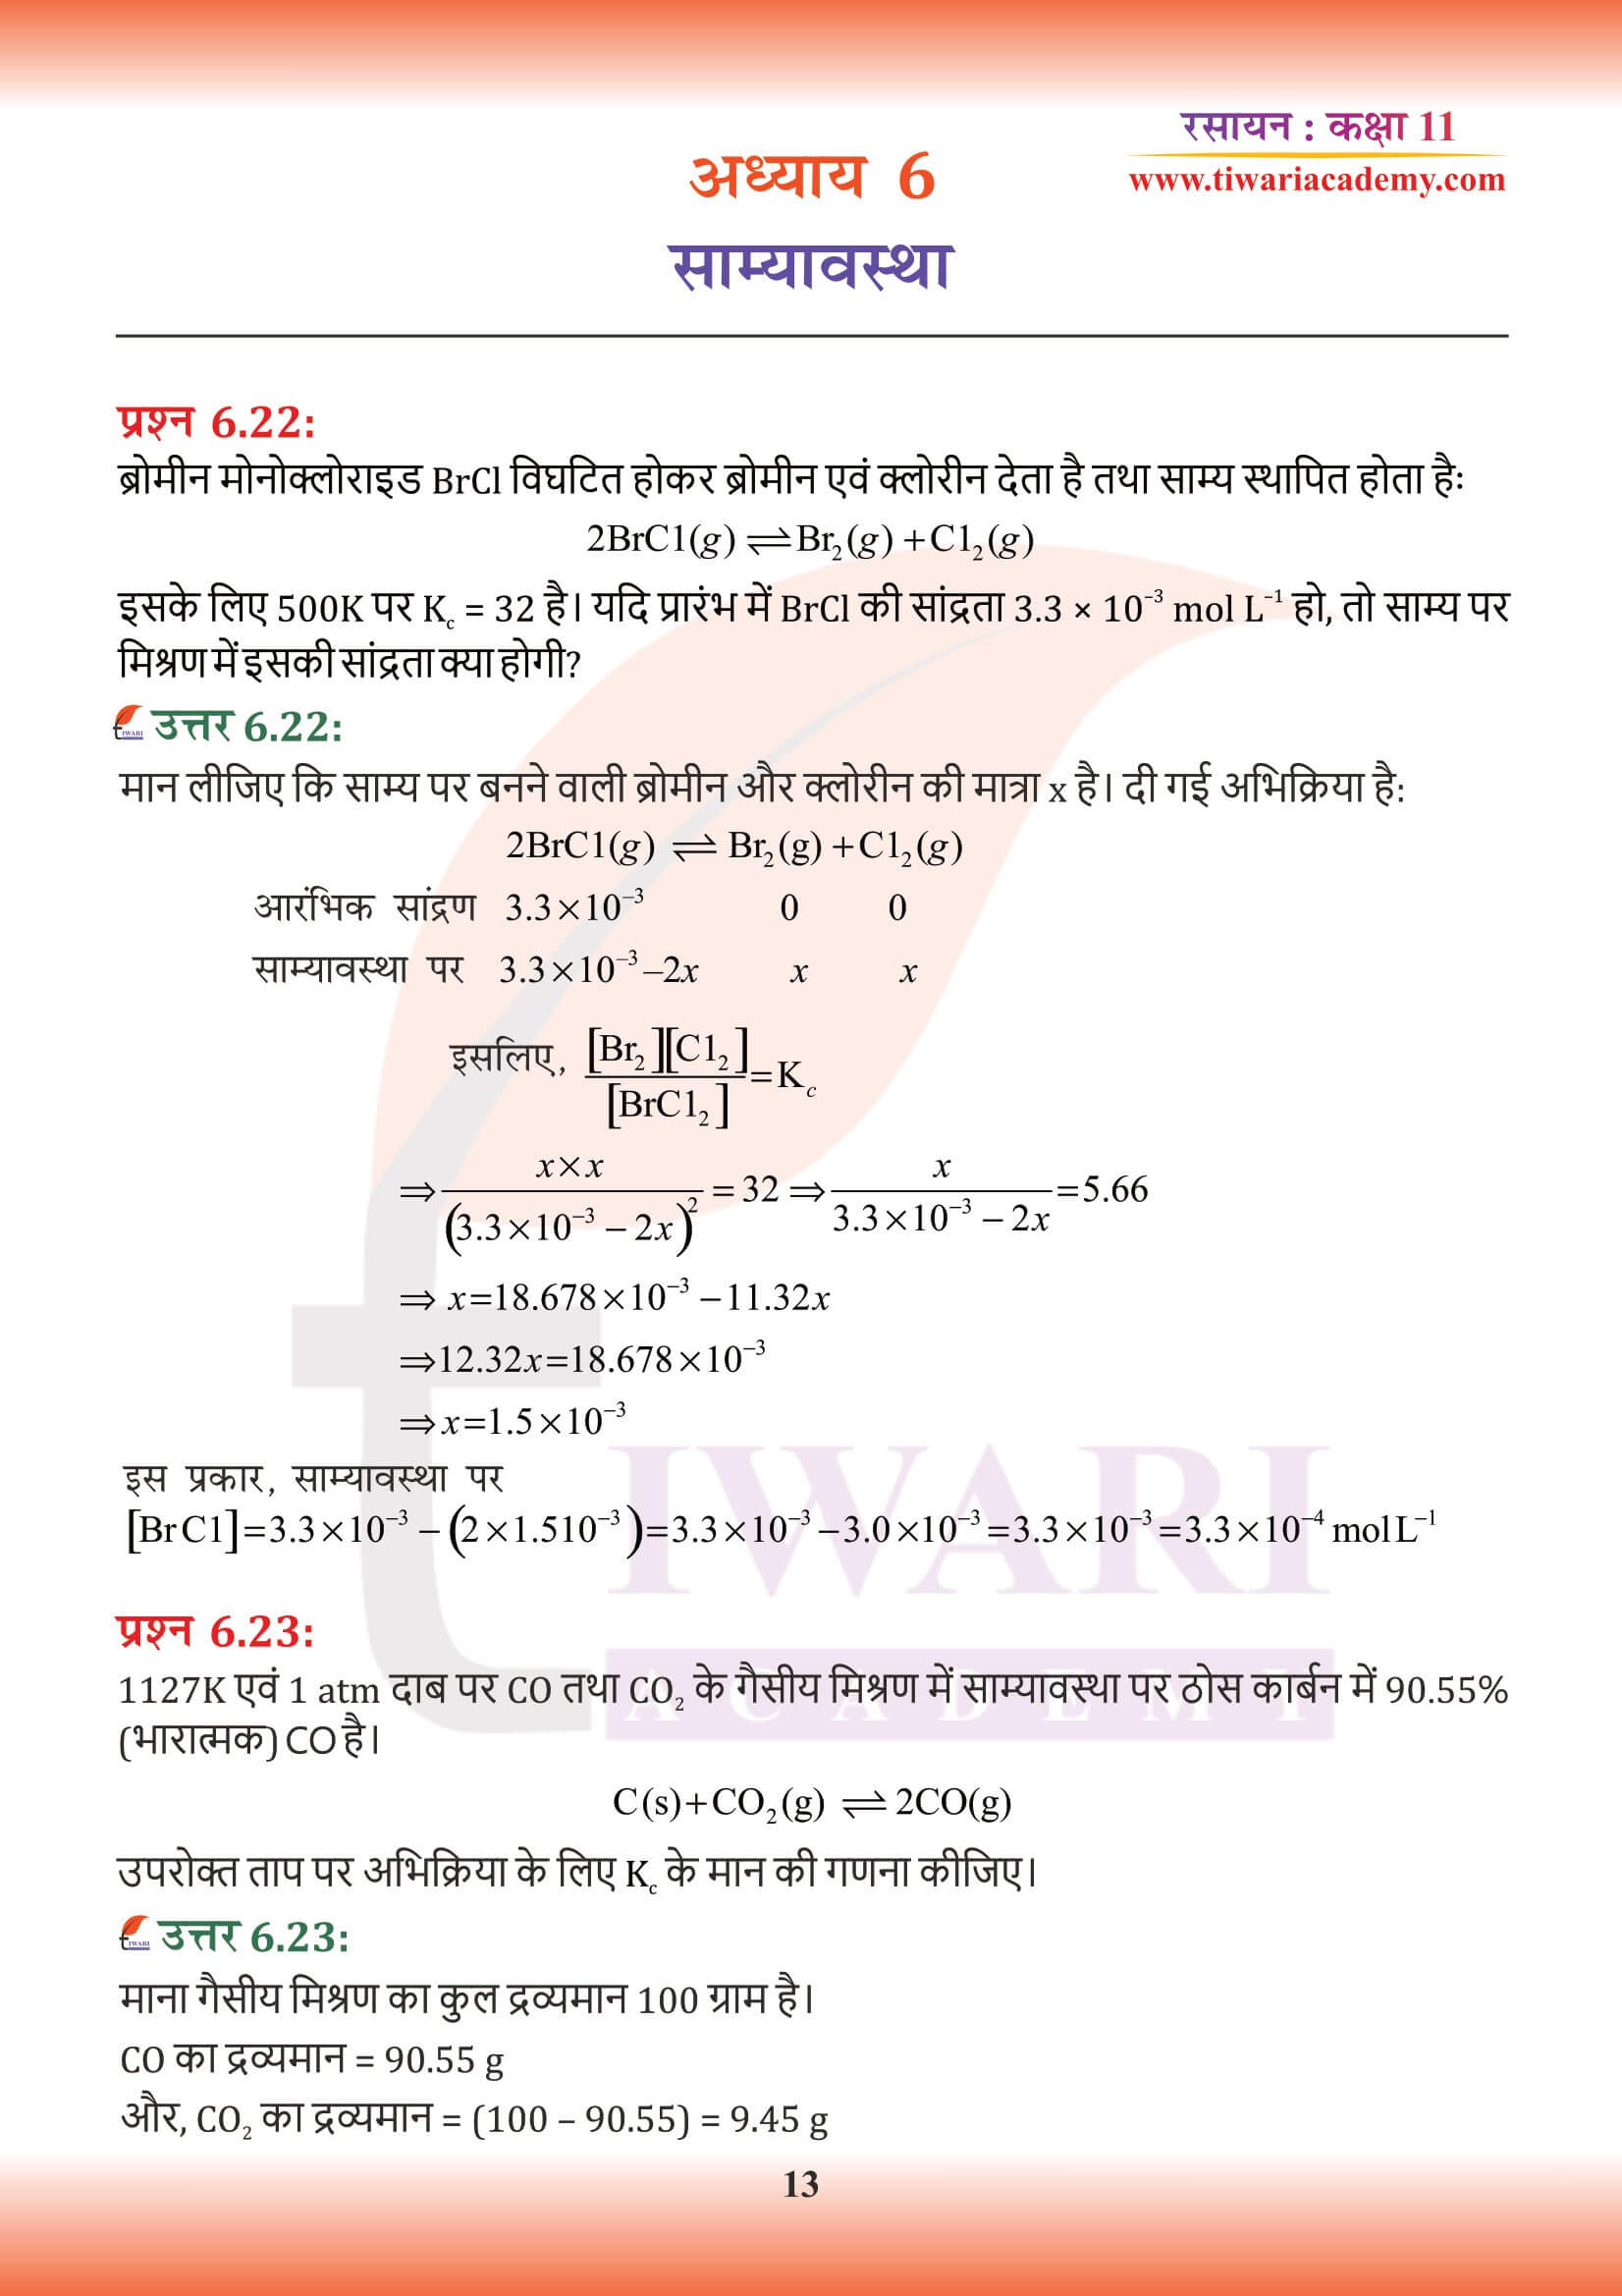 कक्षा 11 रसायन अध्याय 6 के हल हिंदी में